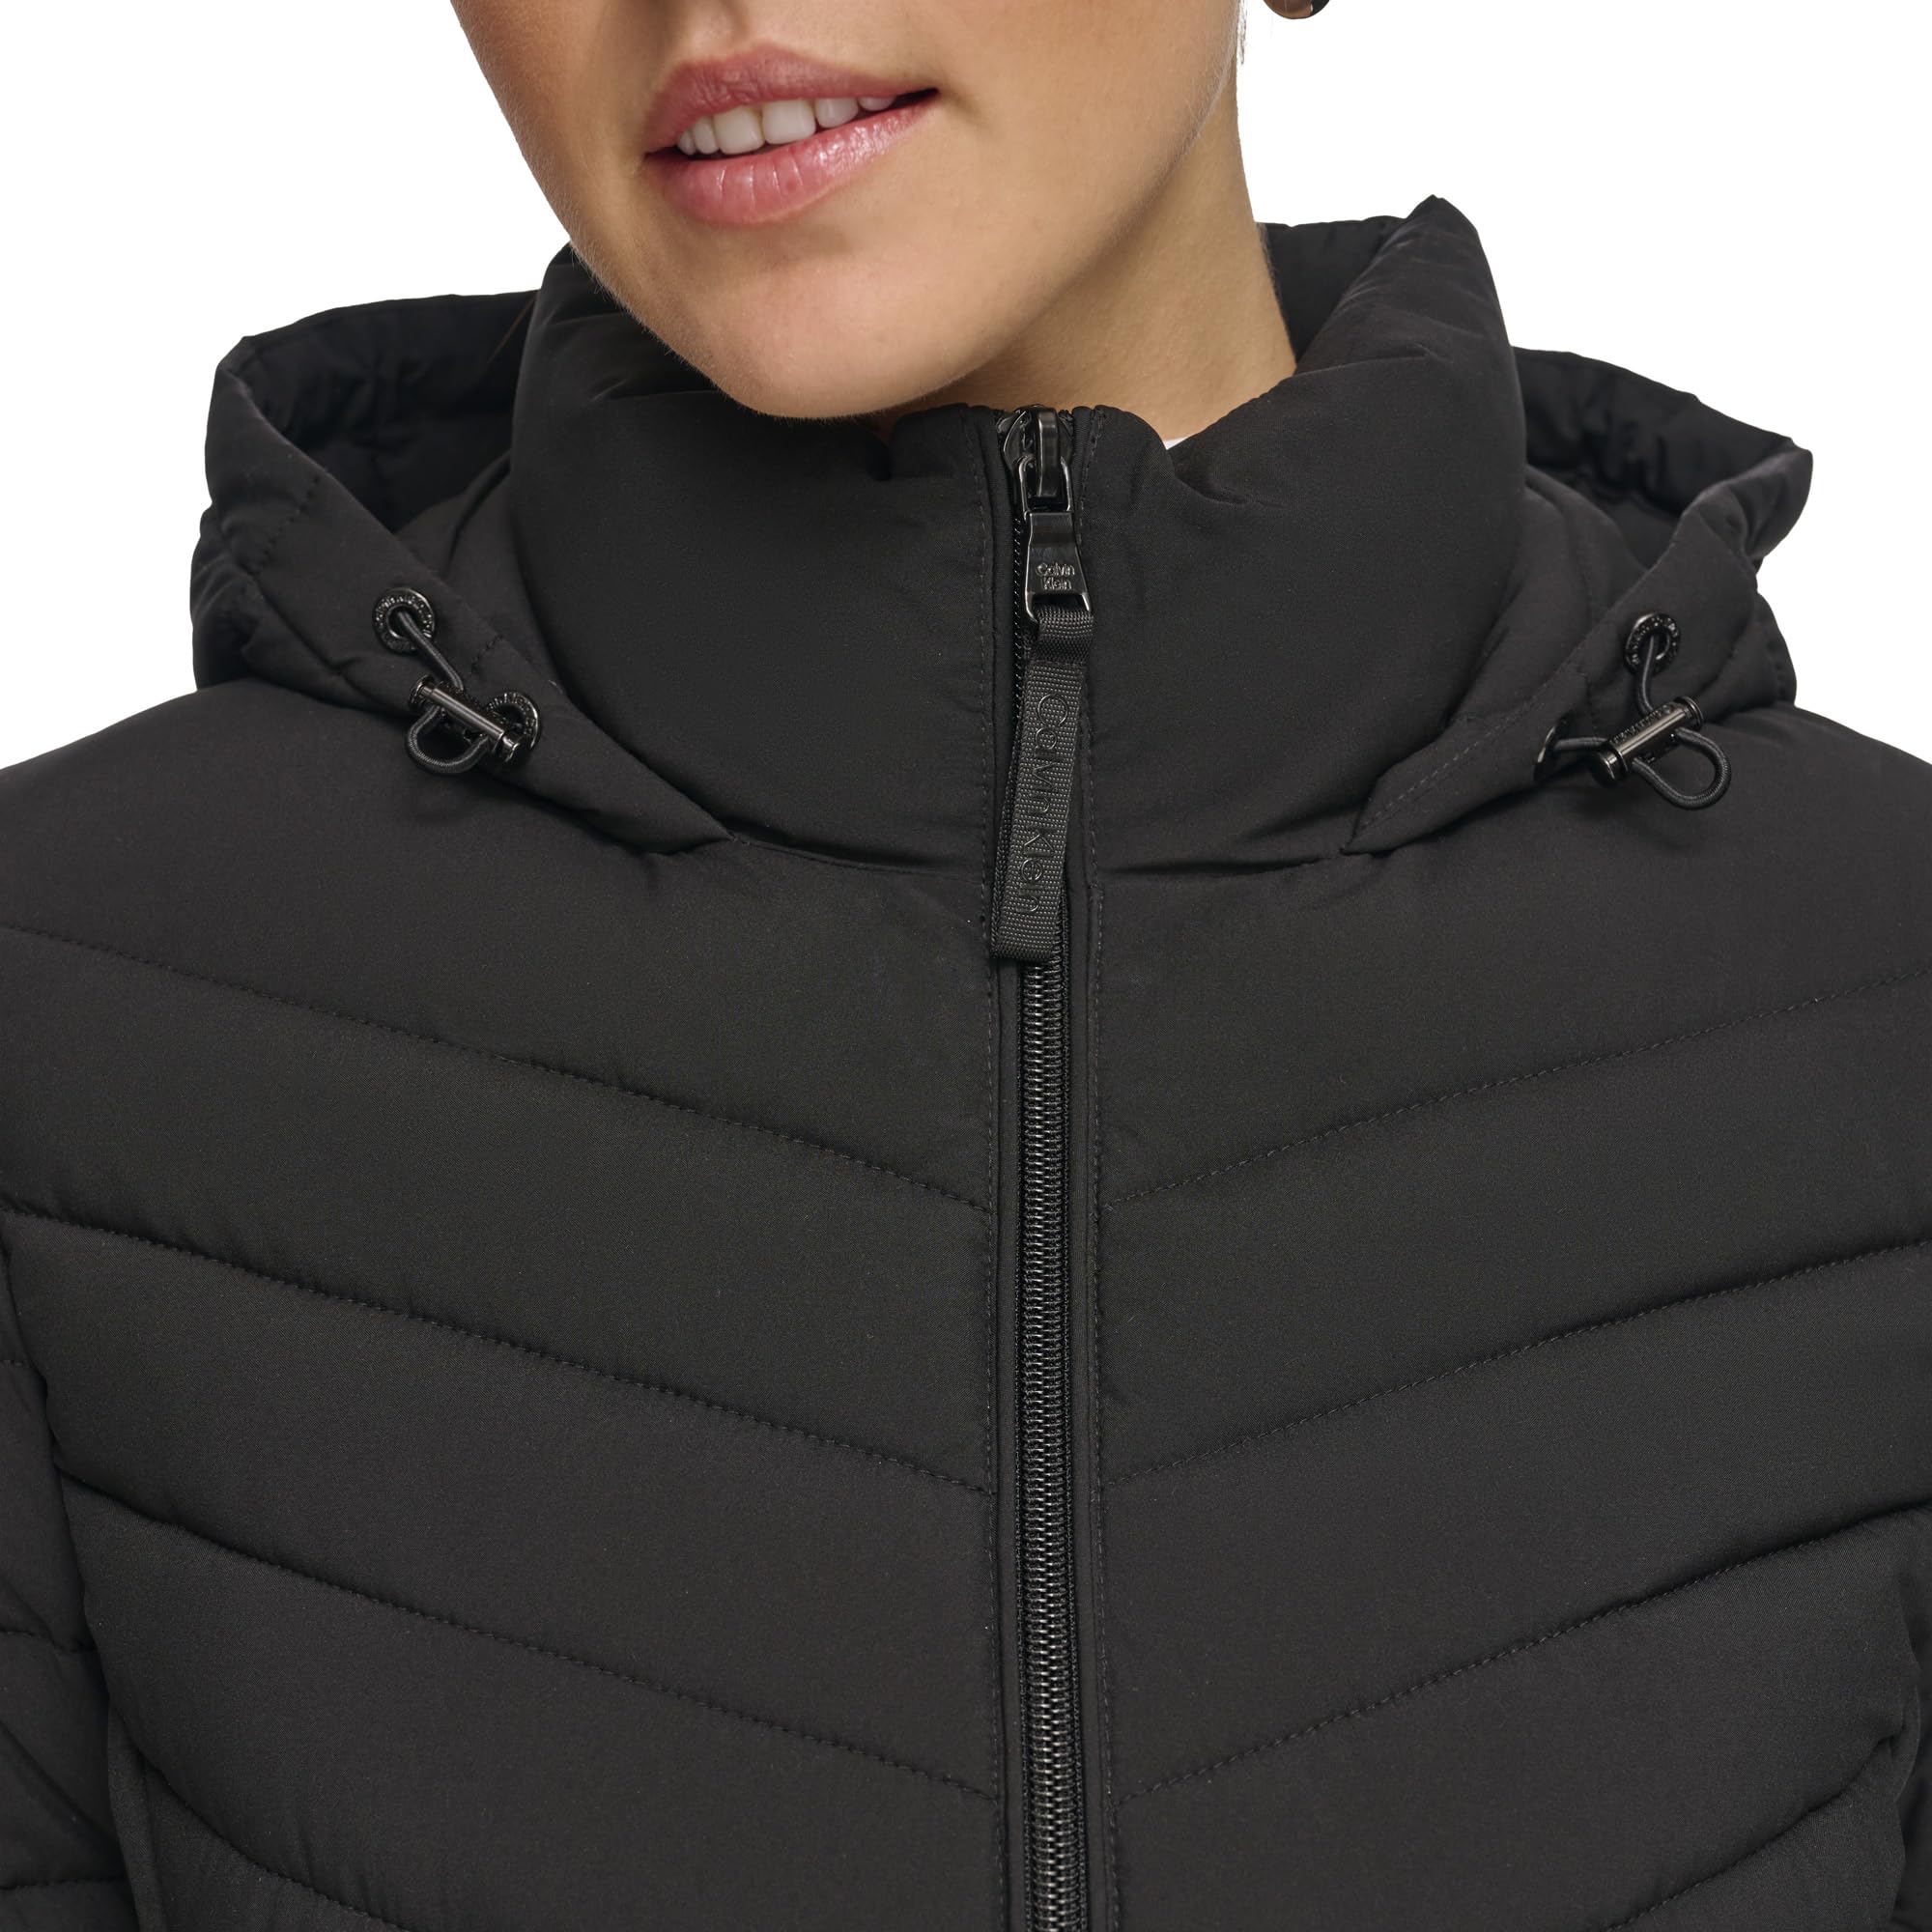 Calvin Klein Women's Light-Weight Hooded Puffer Jacket